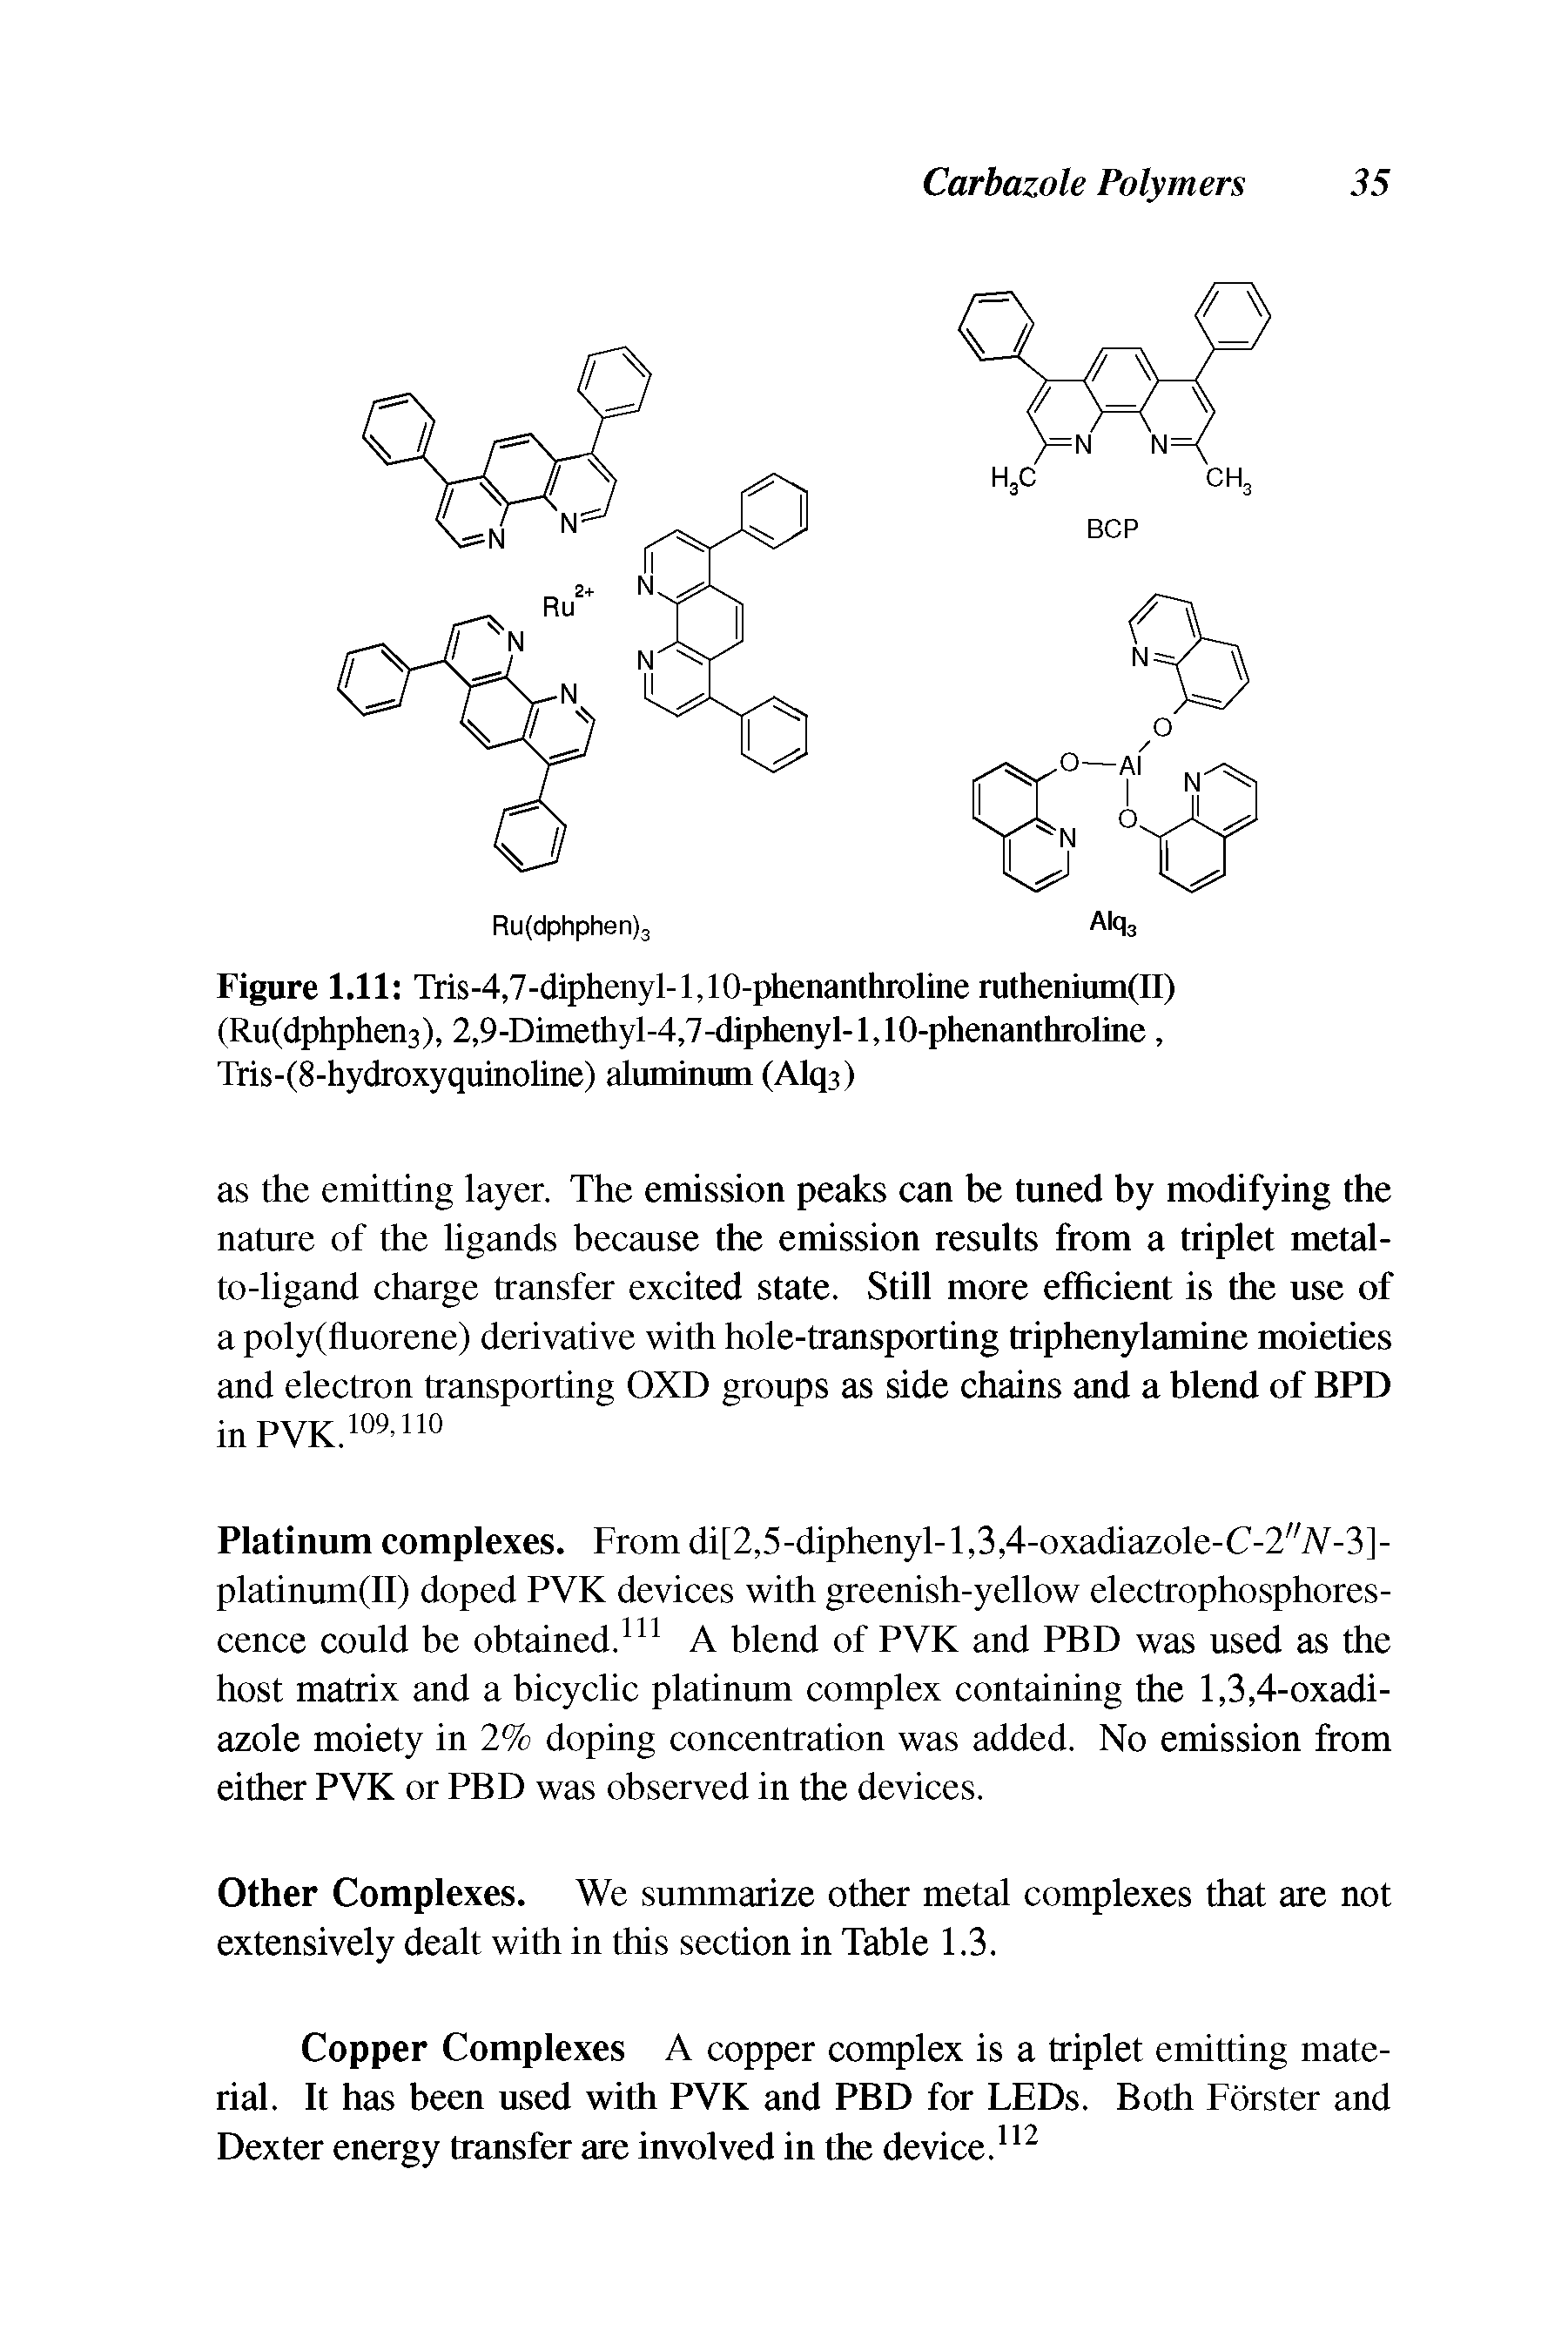 Figure 1.11 Tris-4,7-diphenyl-l,10-phenanthroline ruthenium(II) (Ru(dphphen3), 2,9-Dimethyl-4,7-diphenyl-l,10-phenanthroline, Tris-(8-hydroxyquinoline) aluminum (Alq3)...